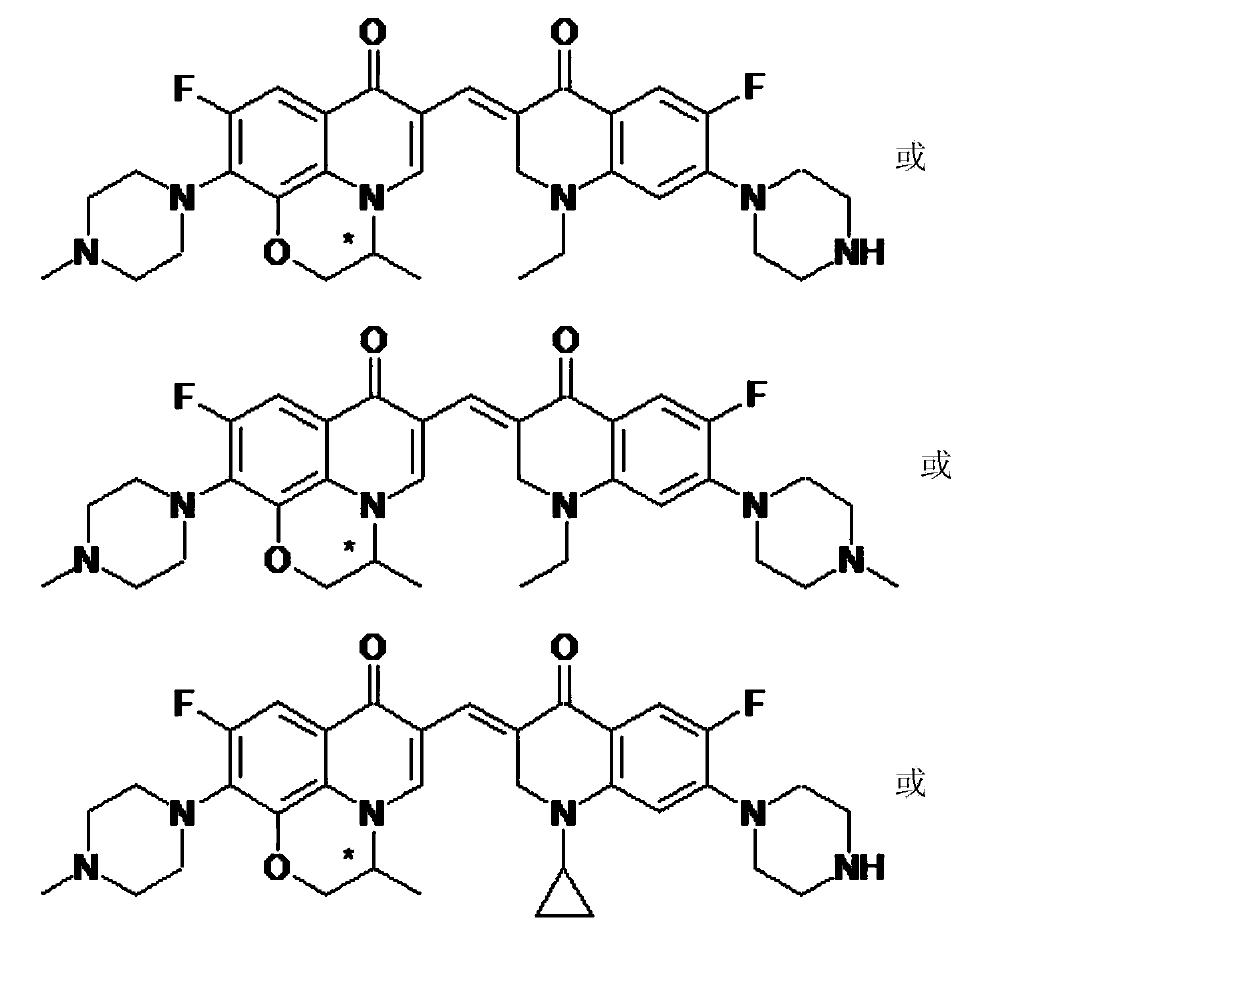 3,3'-methene-difluoroquinolone derivative of chiral oxazine quinoline ring as well as preparation method and application of 3,3'-methene-difluoroquinolone derivative